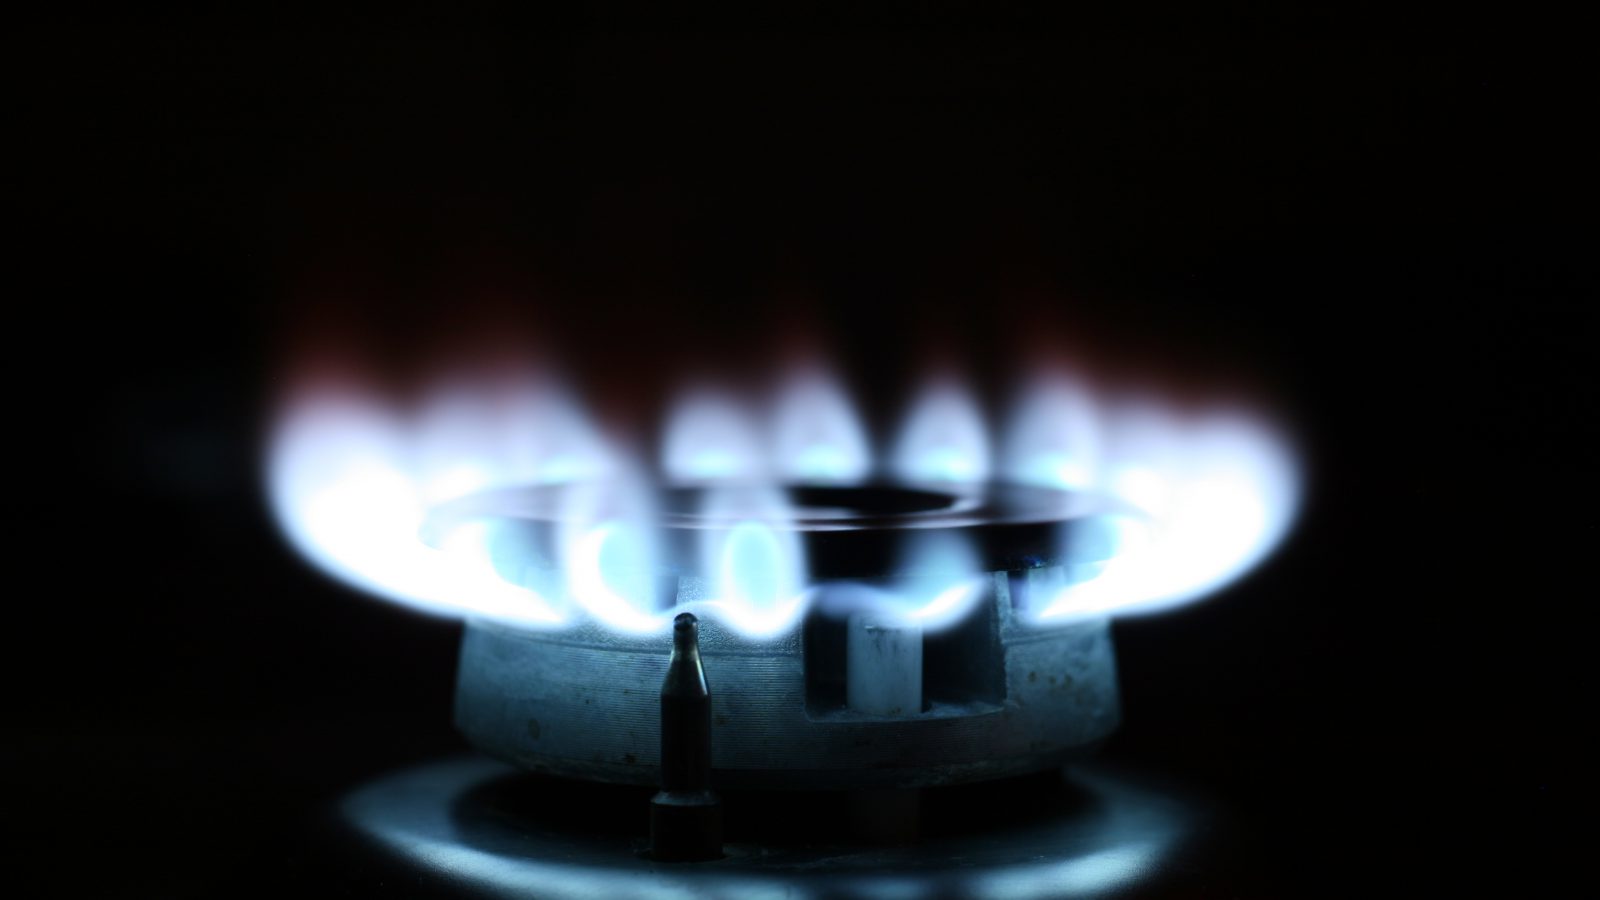 lit gas burner